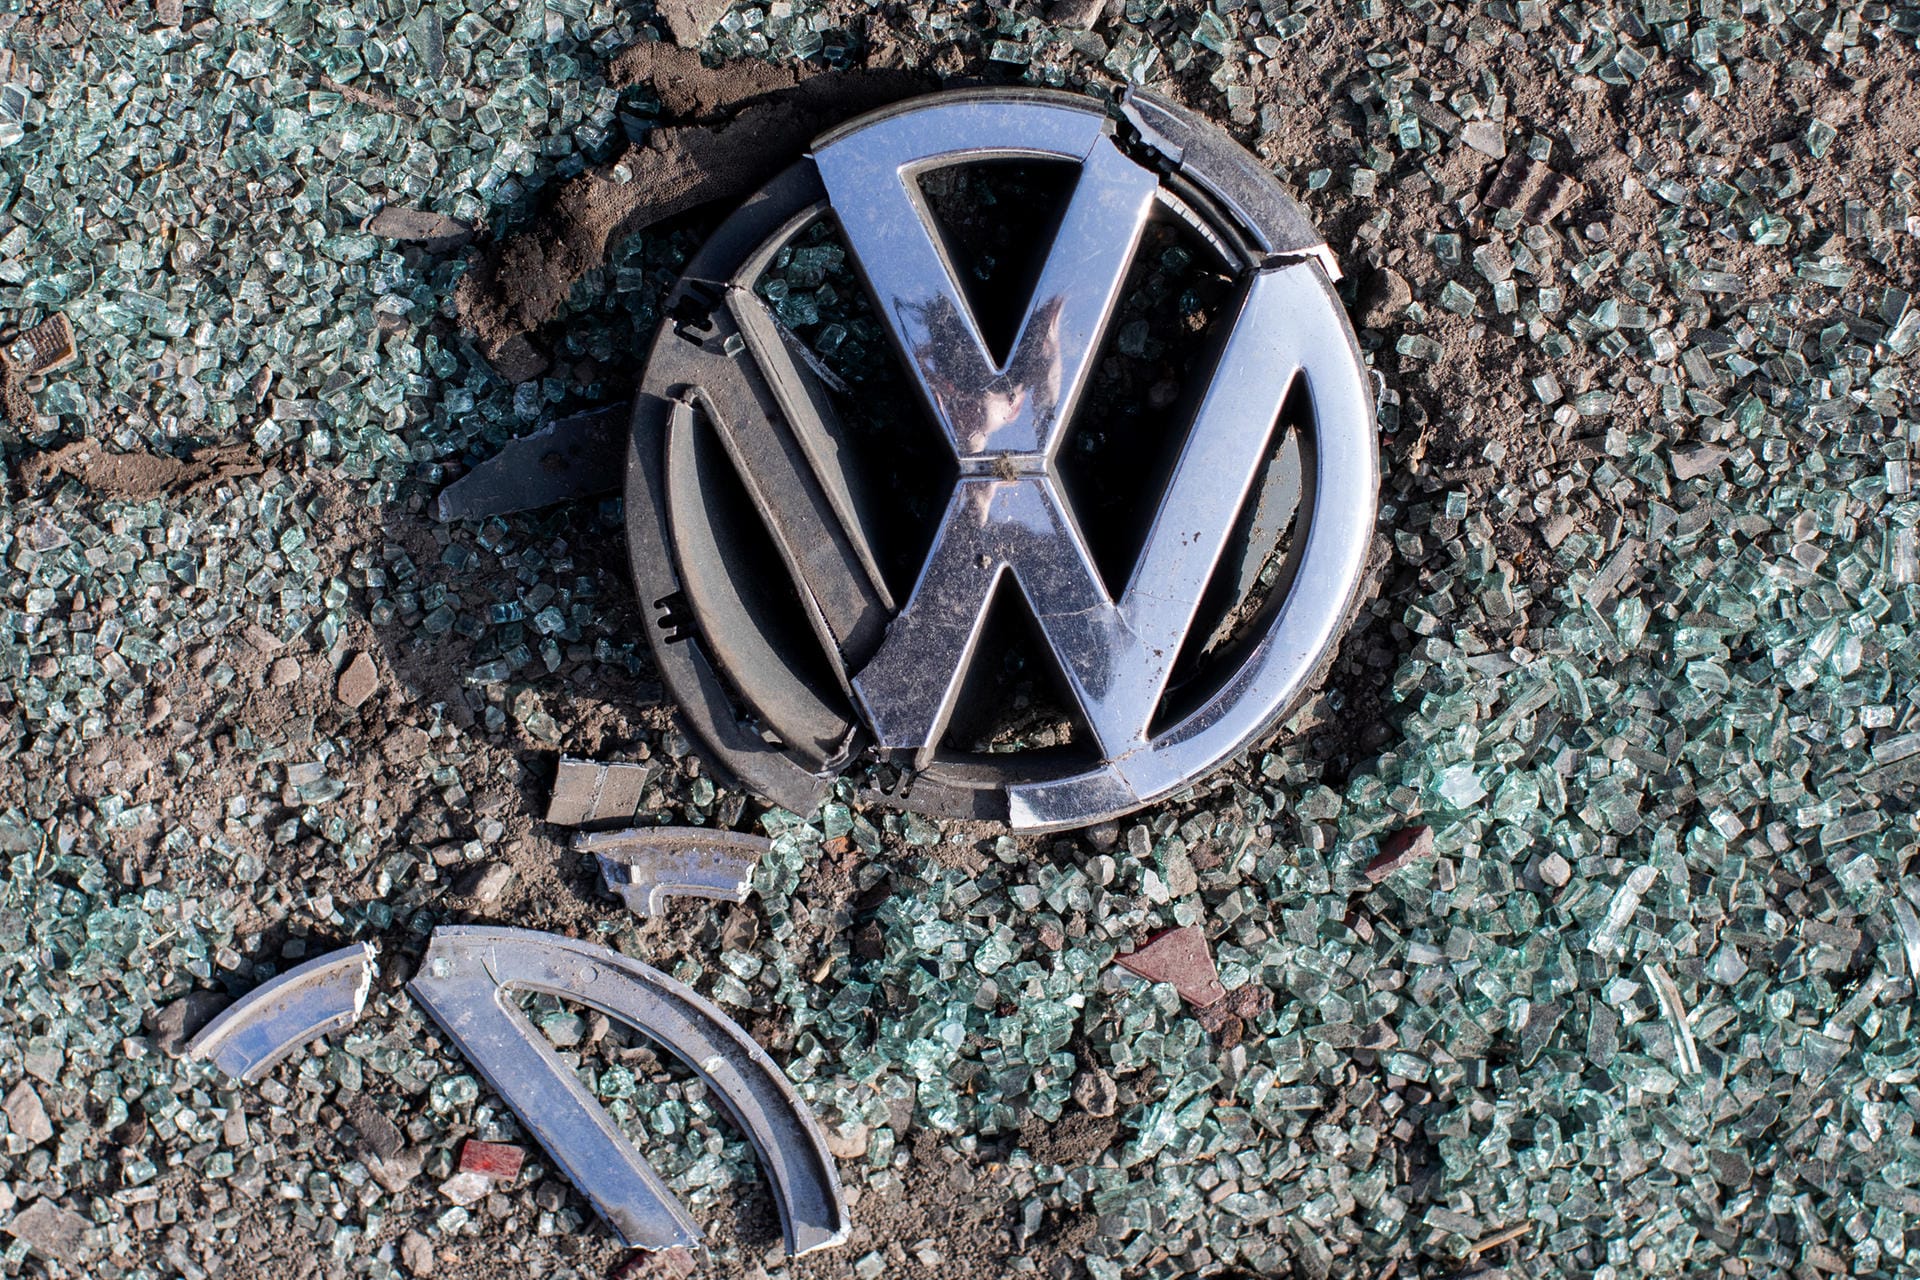 Das höchste jemals hierzulande verhängte Bußgeld: Volkswagen zahlte im Juni 2018 in Deutschland eine Geldbuße von einer Milliarde Euro wegen der Dieselaffäre. In den USA gab VW bereits rund 25 Milliarden Euro für Entschädigungszahlungen und Strafen aus.